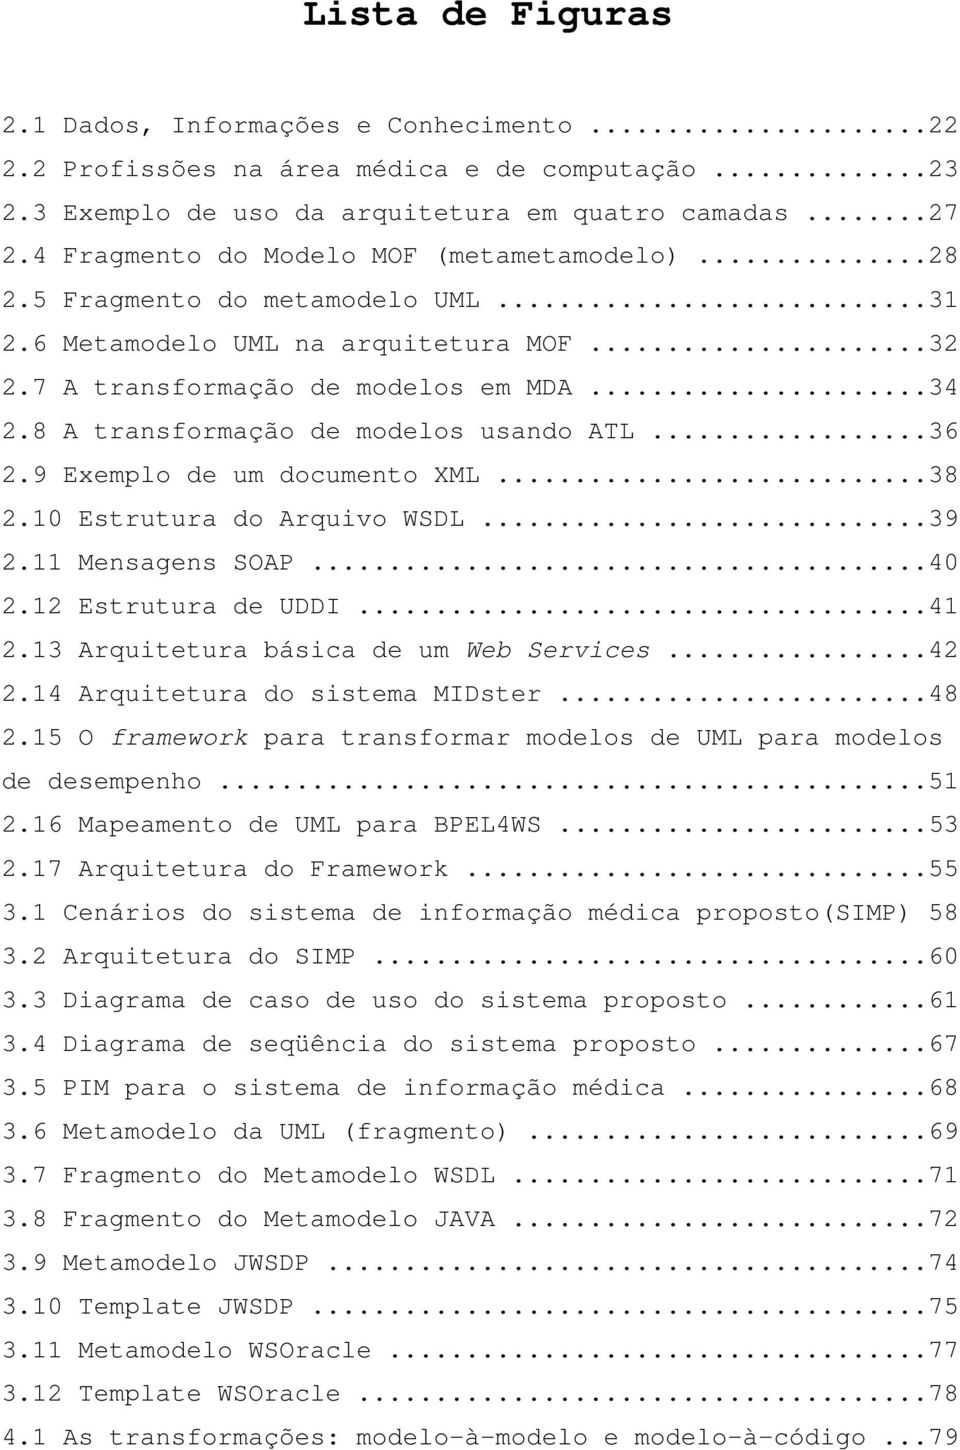 8 A transformação de modelos usando ATL...36 2.9 Exemplo de um documento XML...38 2.10 Estrutura do Arquivo WSDL...39 2.11 Mensagens SOAP...40 2.12 Estrutura de UDDI...41 2.